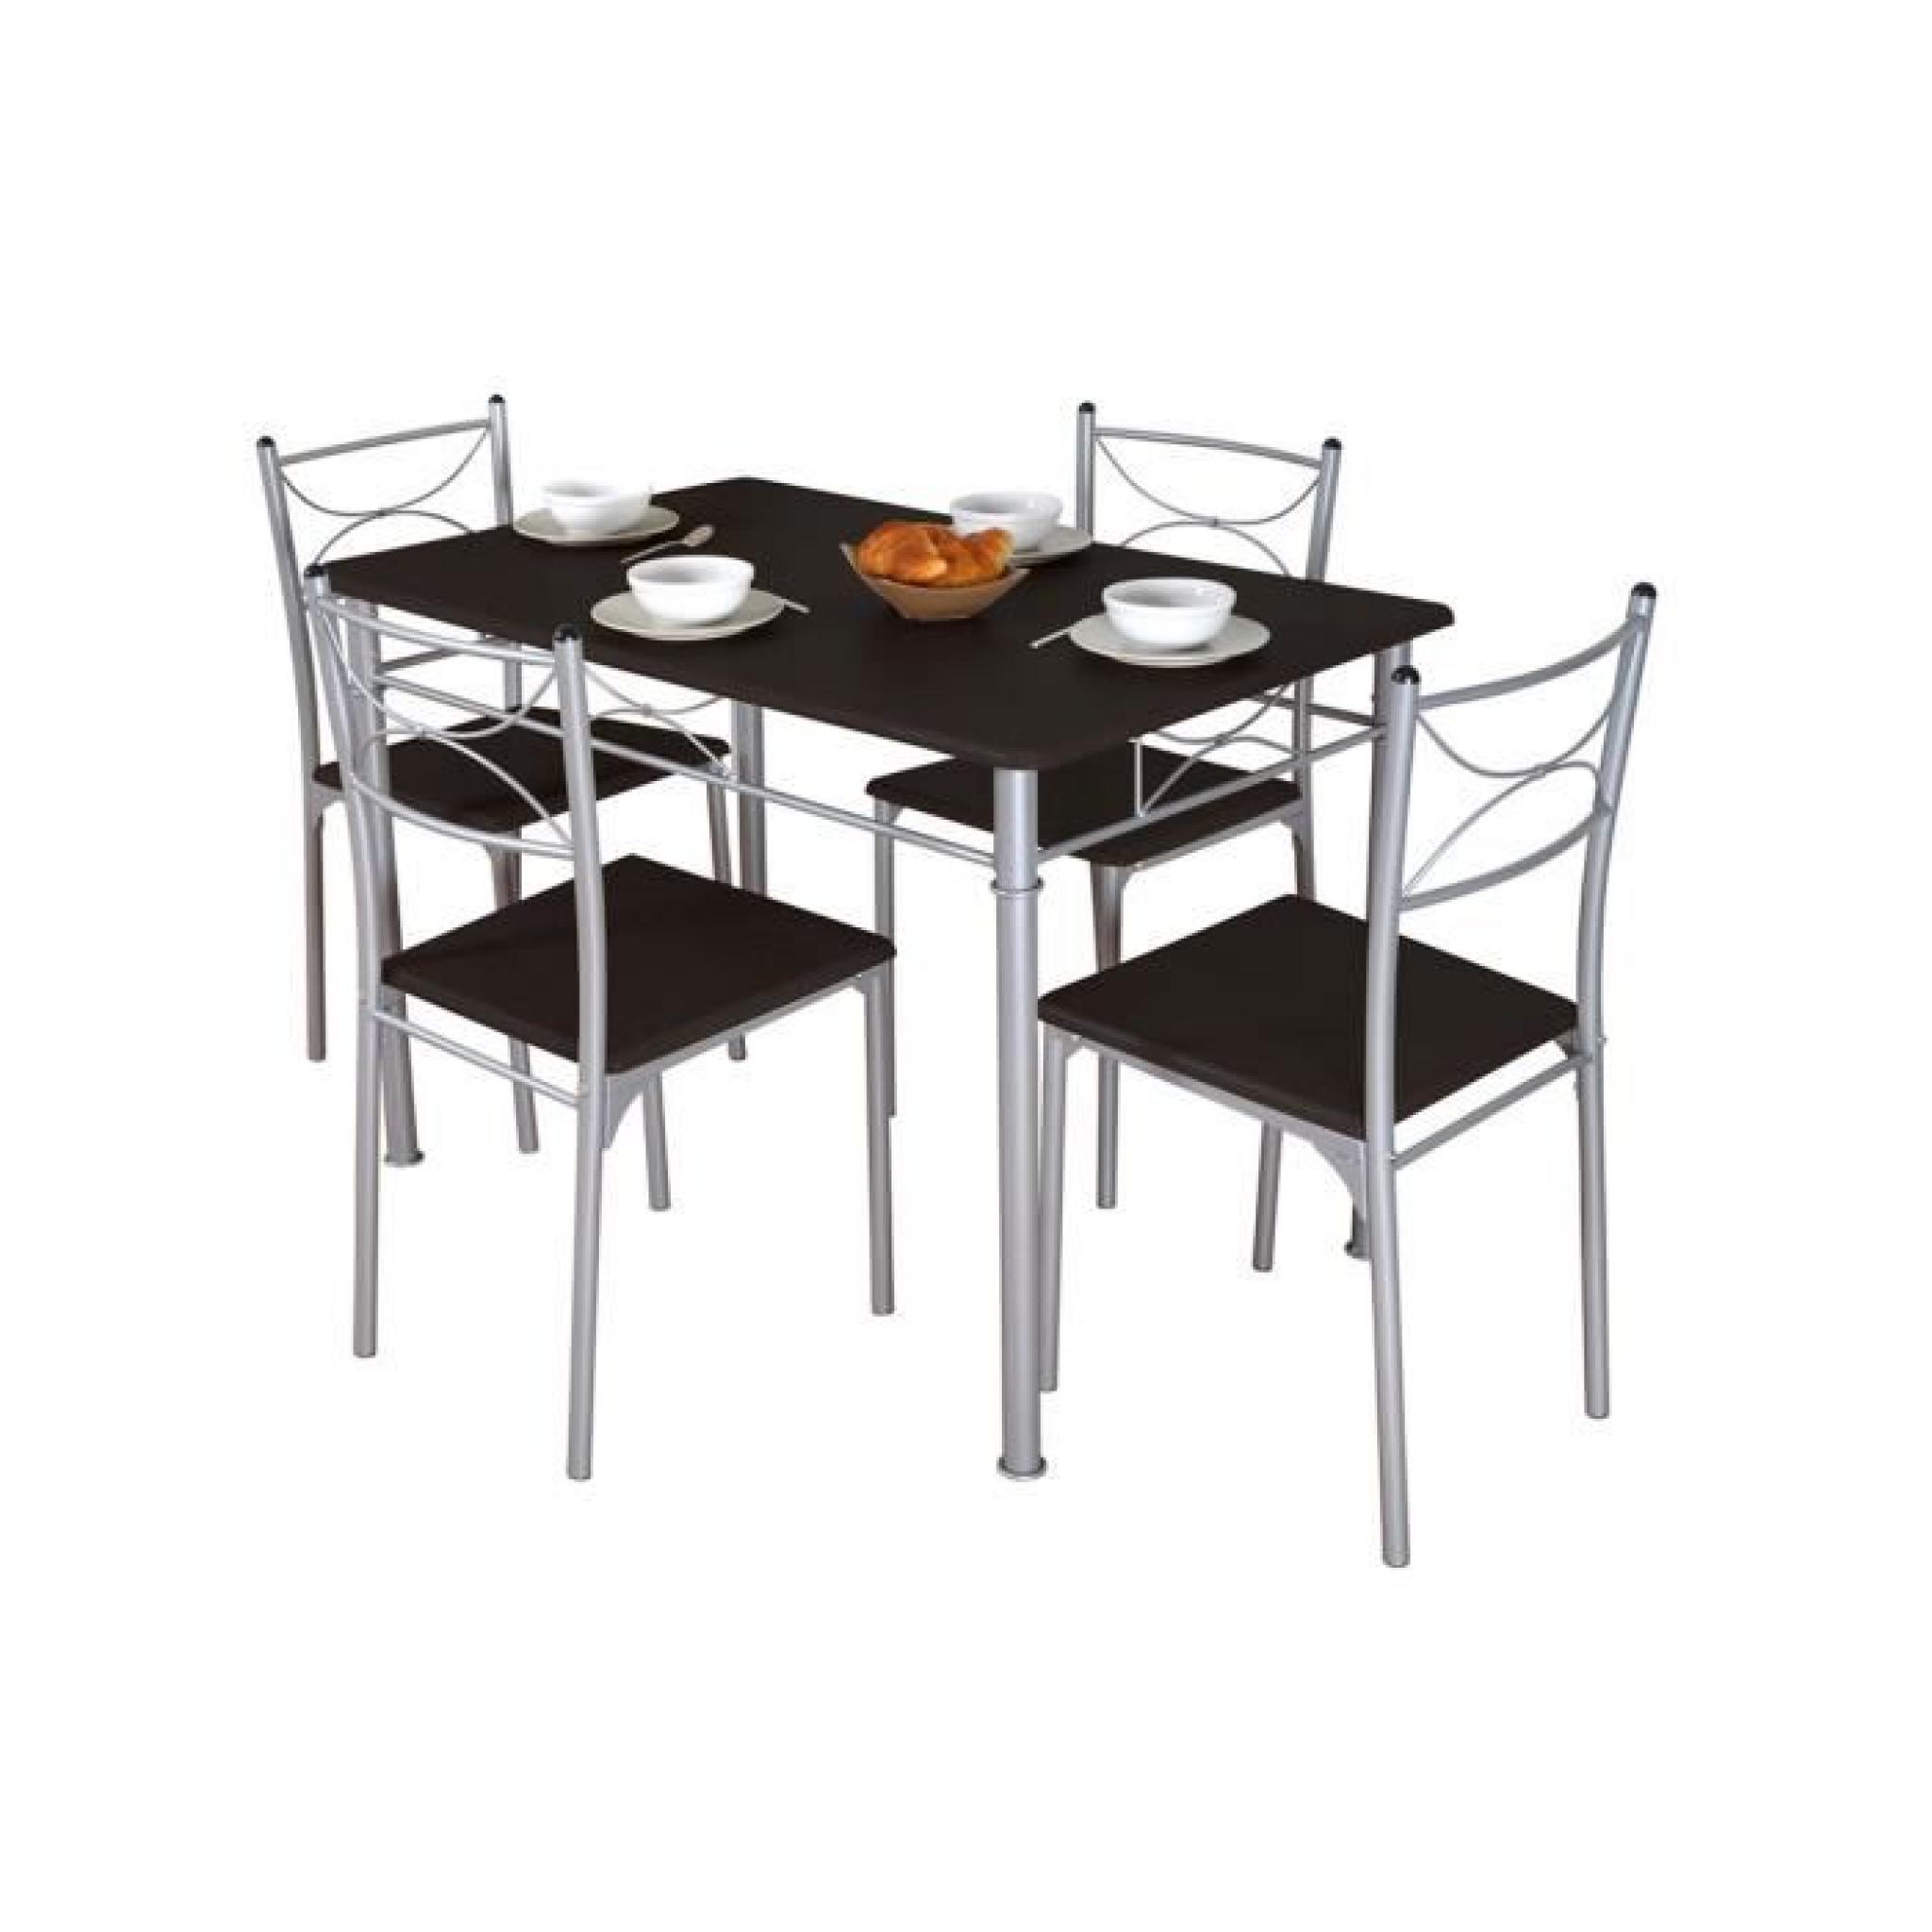 Table de repas + 4 chaises Wengé MIRELLA pas cher